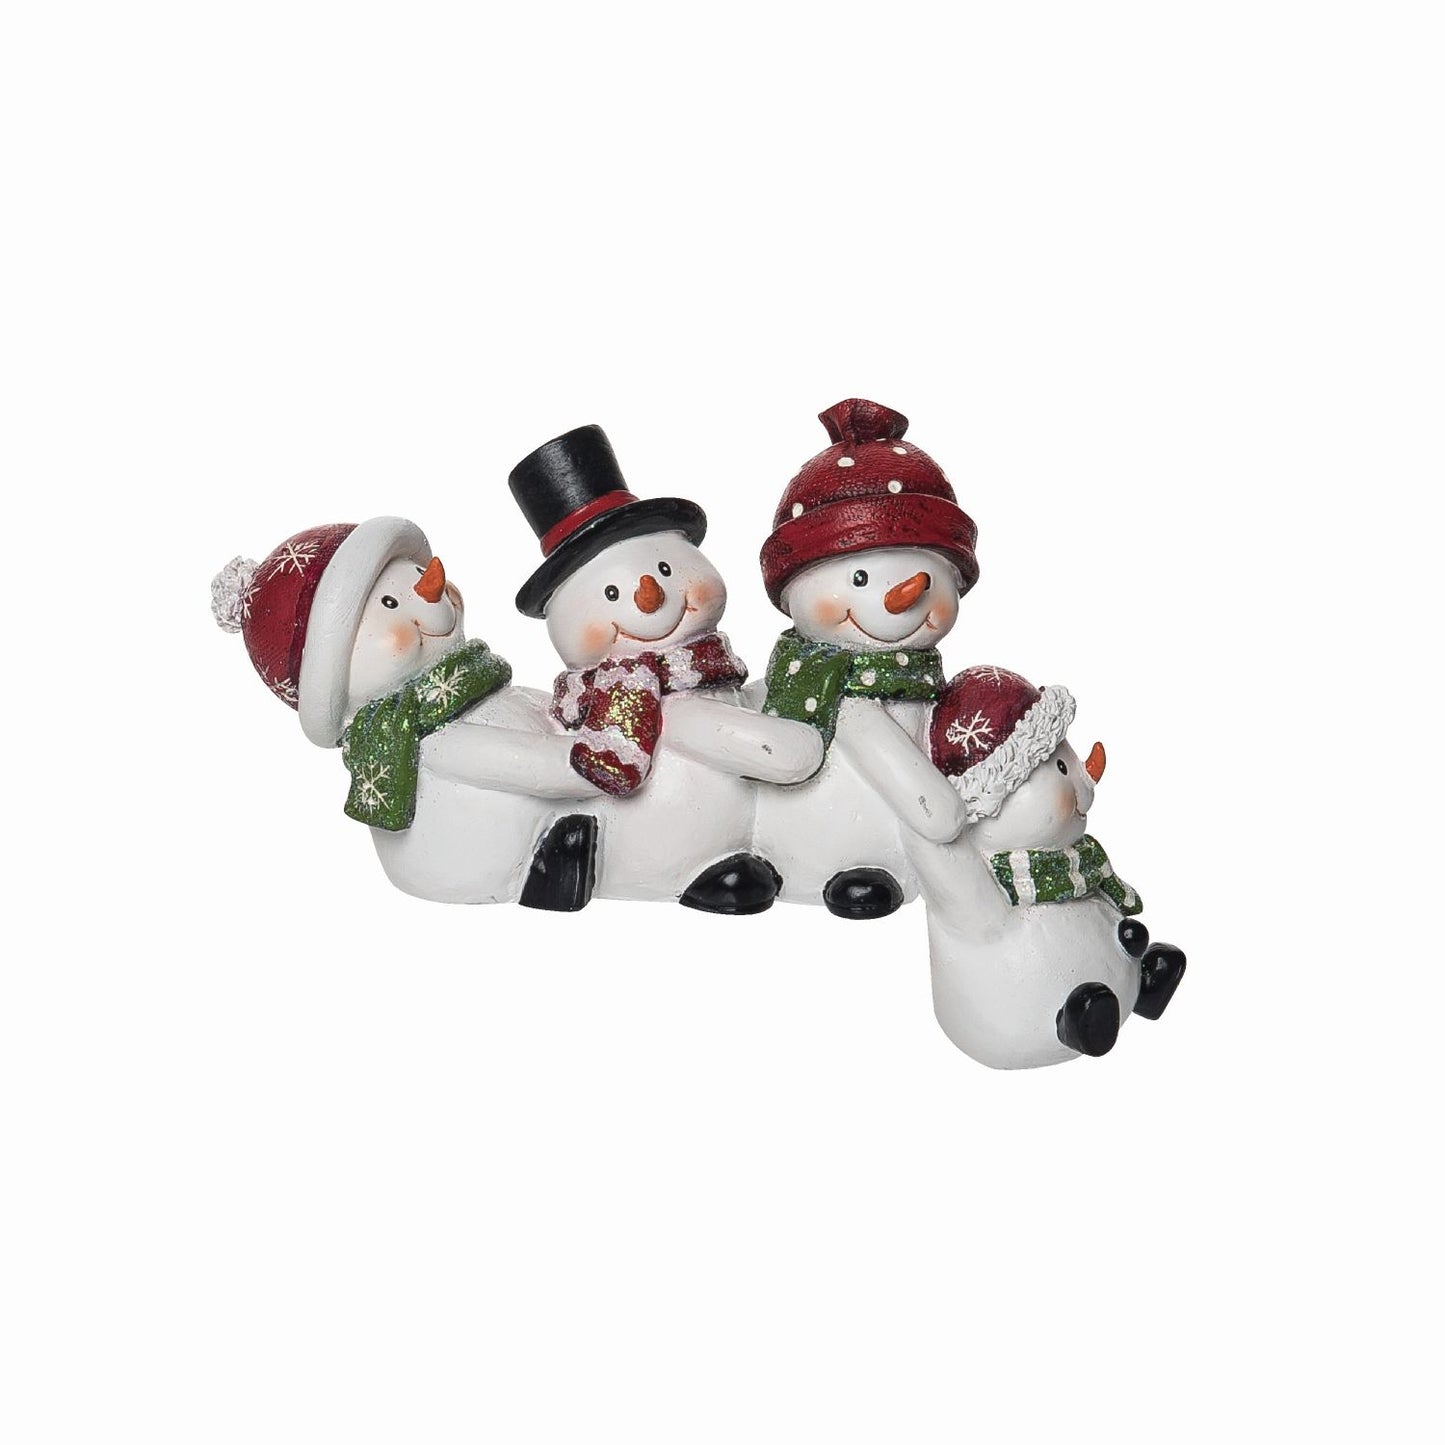 Transpac Resin Snowman Shelf Sitter Friends Fun Figurine